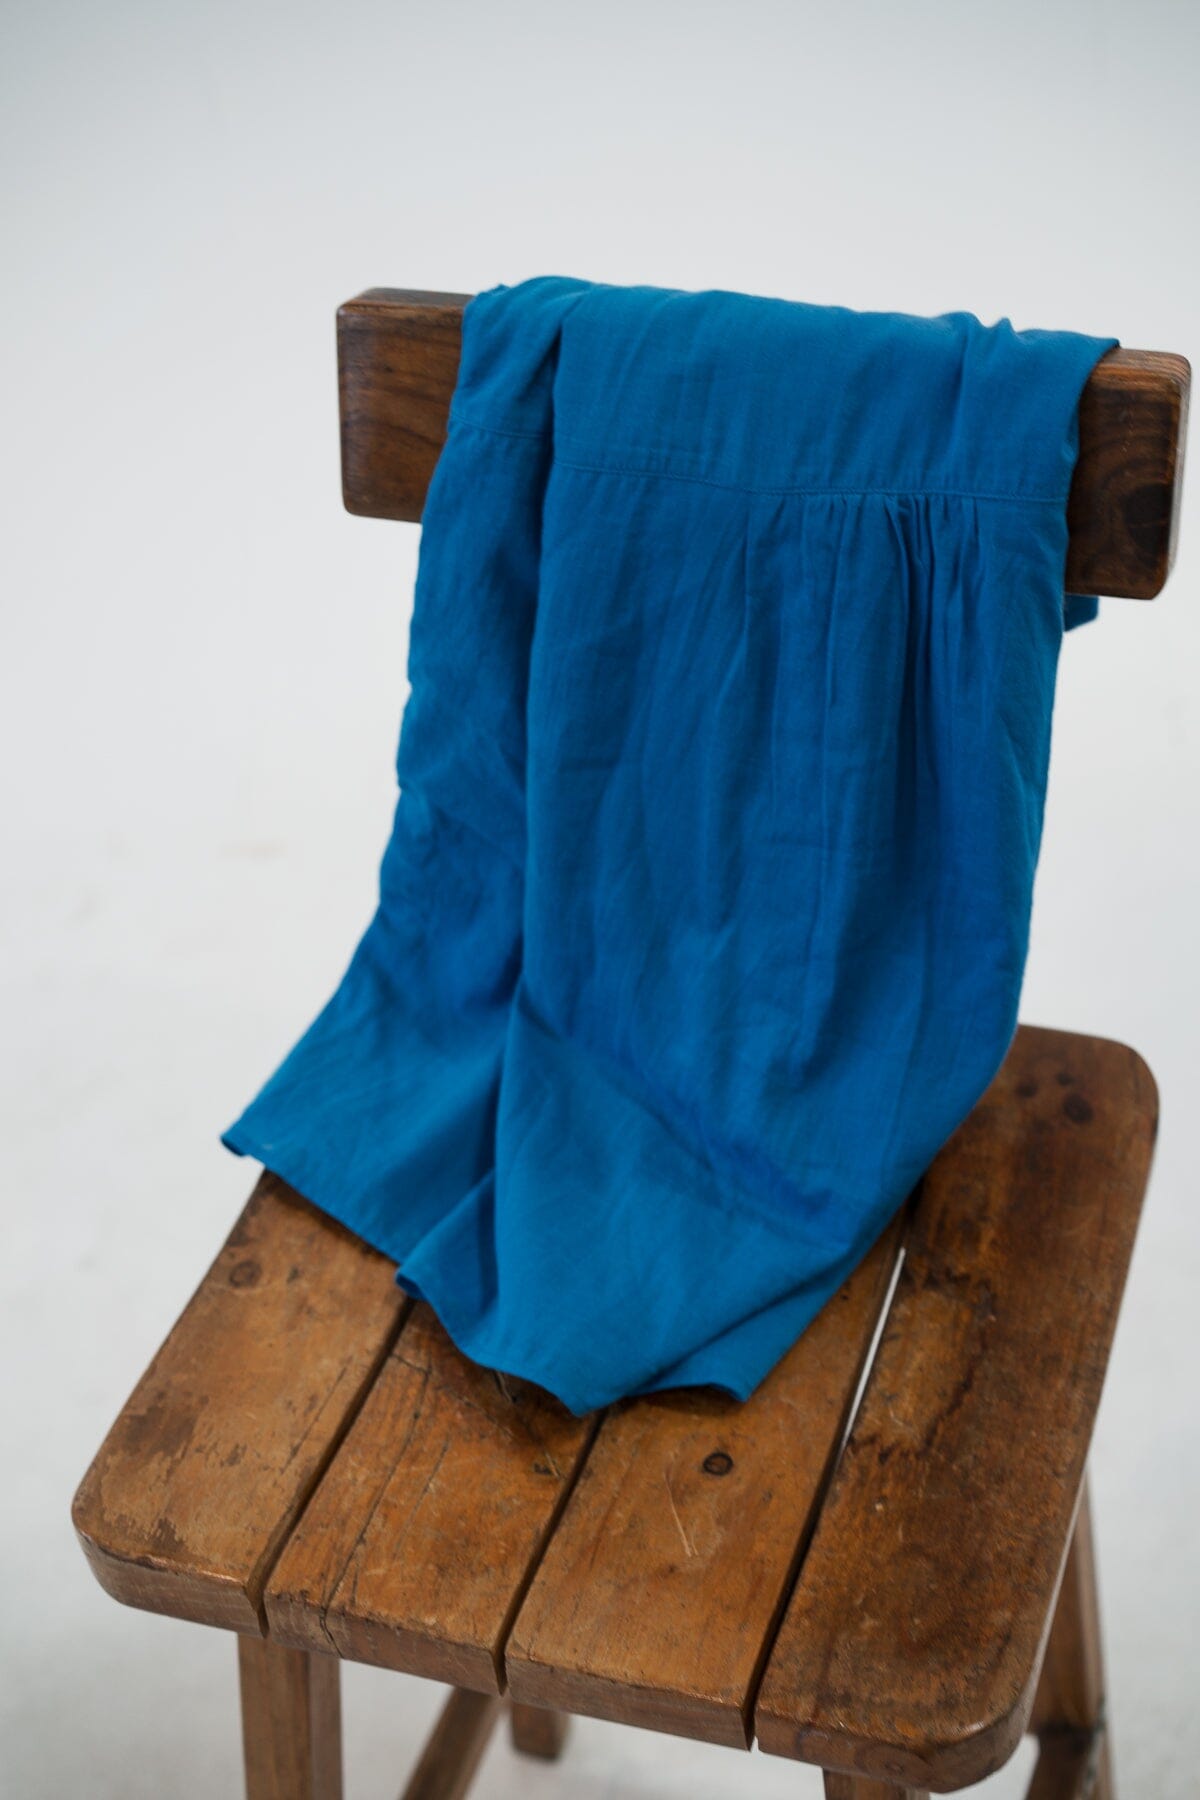 Linnea Mini Dress - Lapis Blue